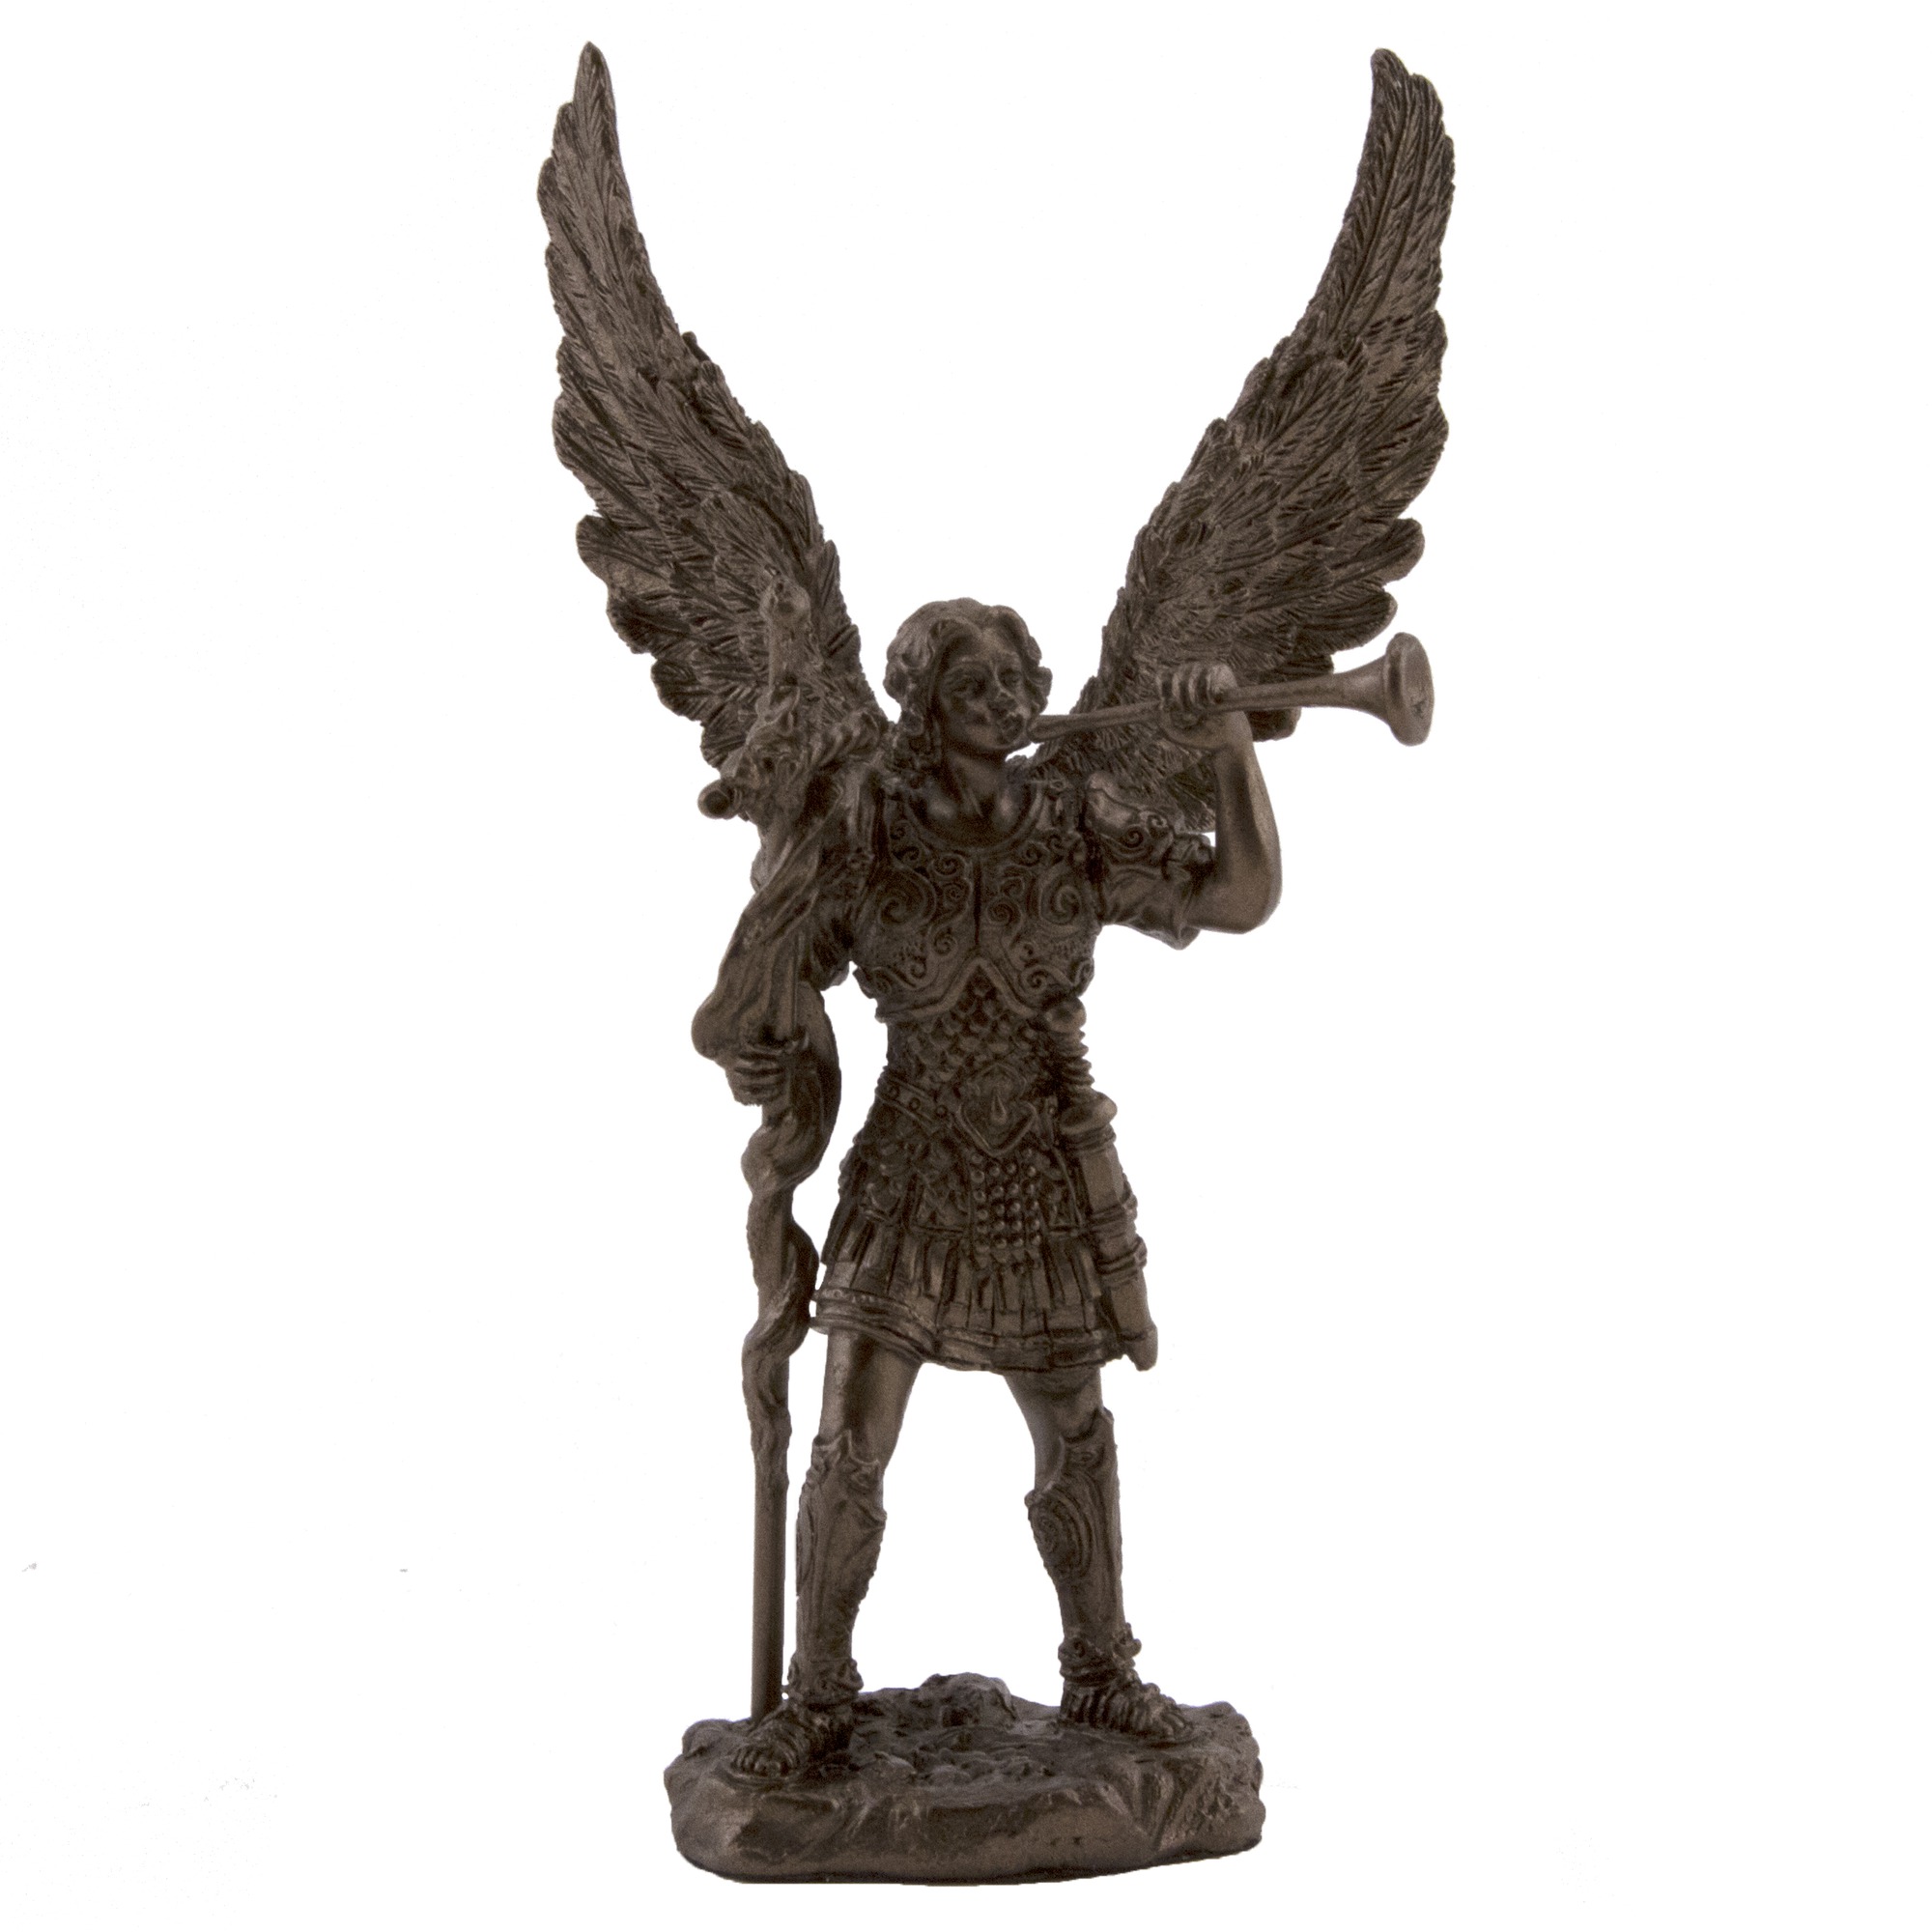 St. Gabriel the Archangel statue